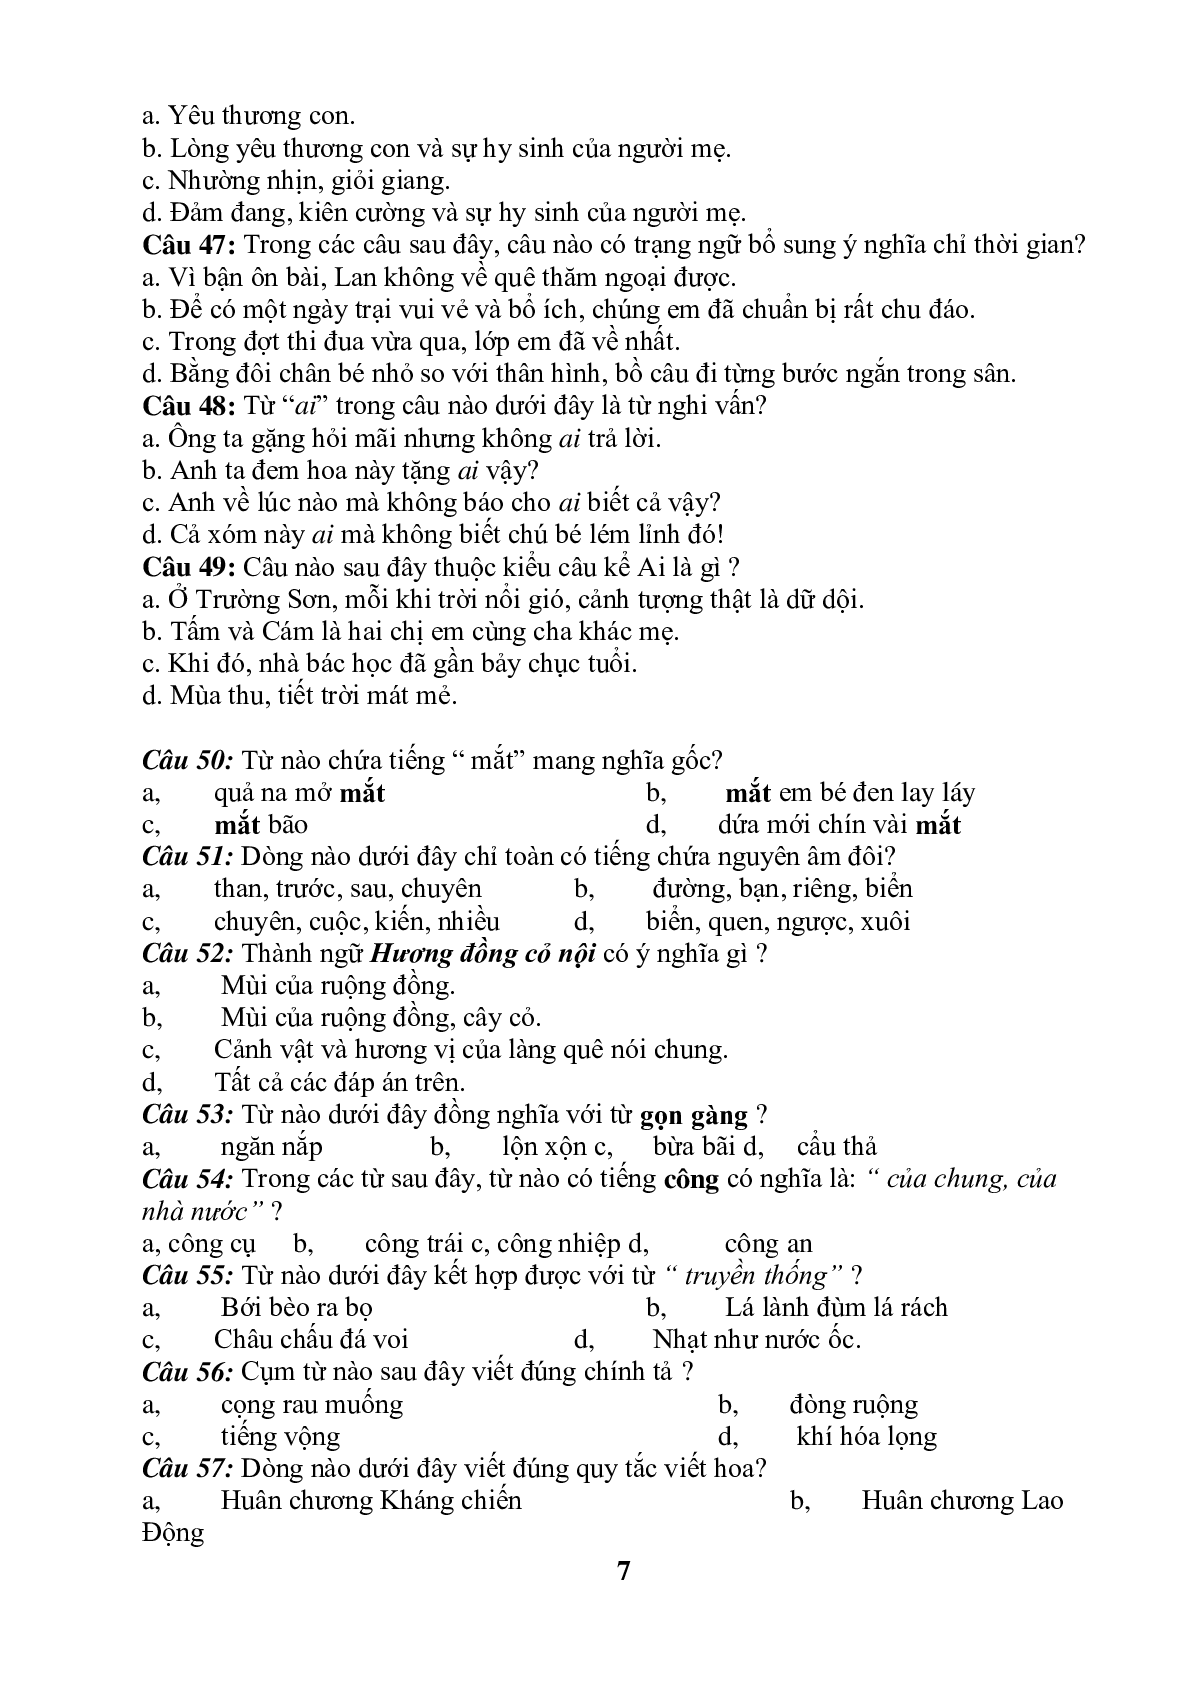 99 câu trắc nghiệm bồi dưỡng HSG môn Tiếng Việt lớp 5 (trang 7)